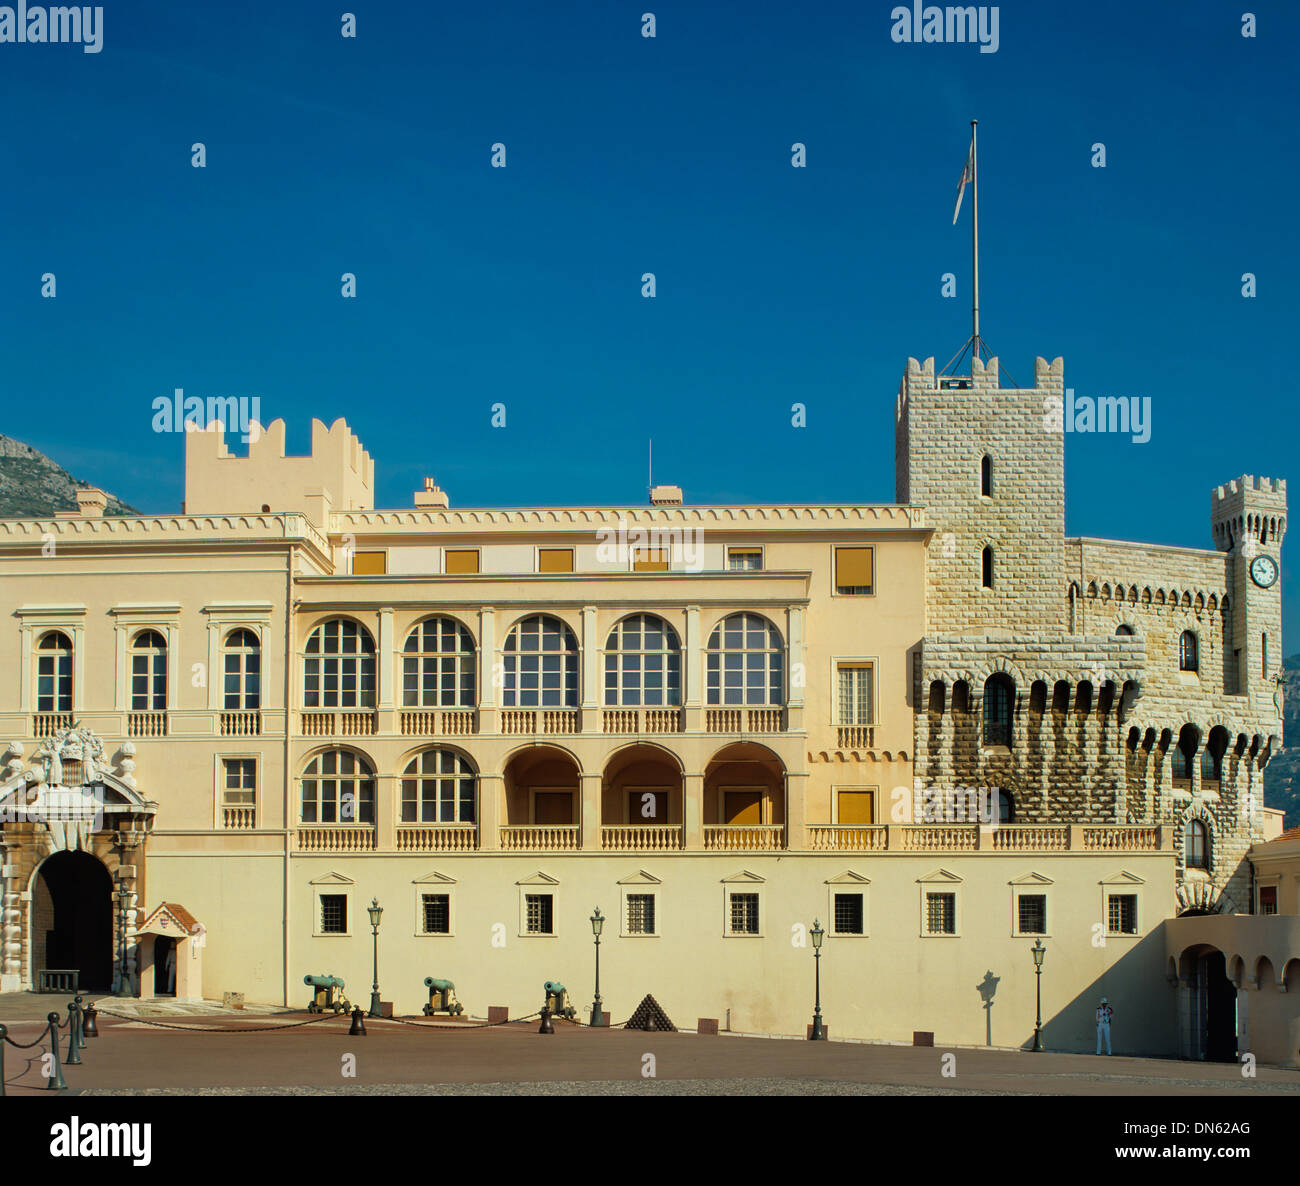 Der Prinz Palast von Monaco, offizielle Residenz des Fürsten von Monaco, Monaco Stockfoto